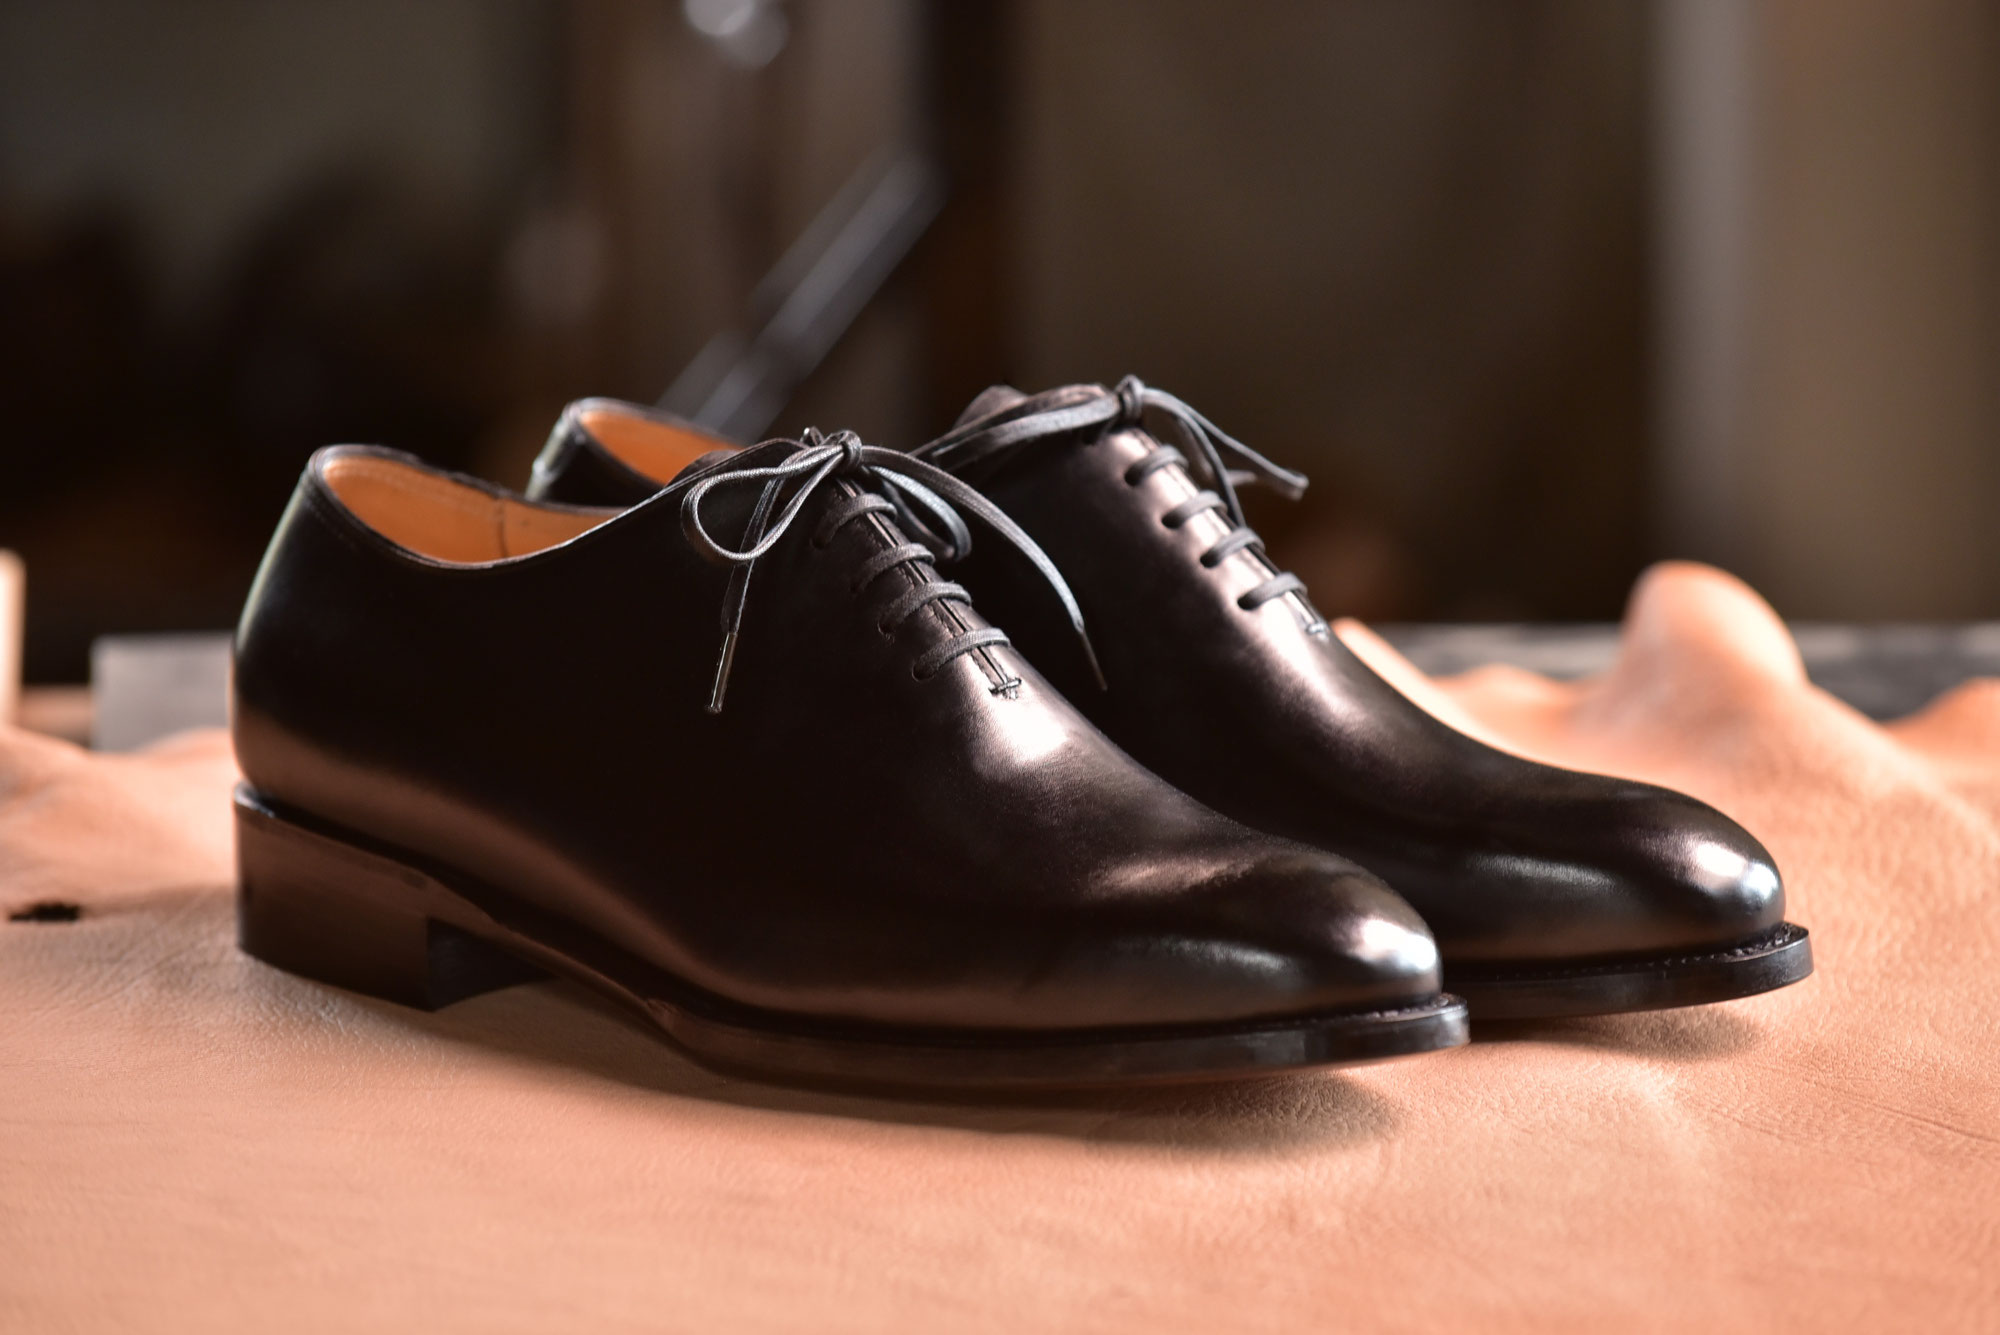 ホールカット・紳士靴 - 靴工房MAMMA【公式ページ】(Shoemeker MAMMA)